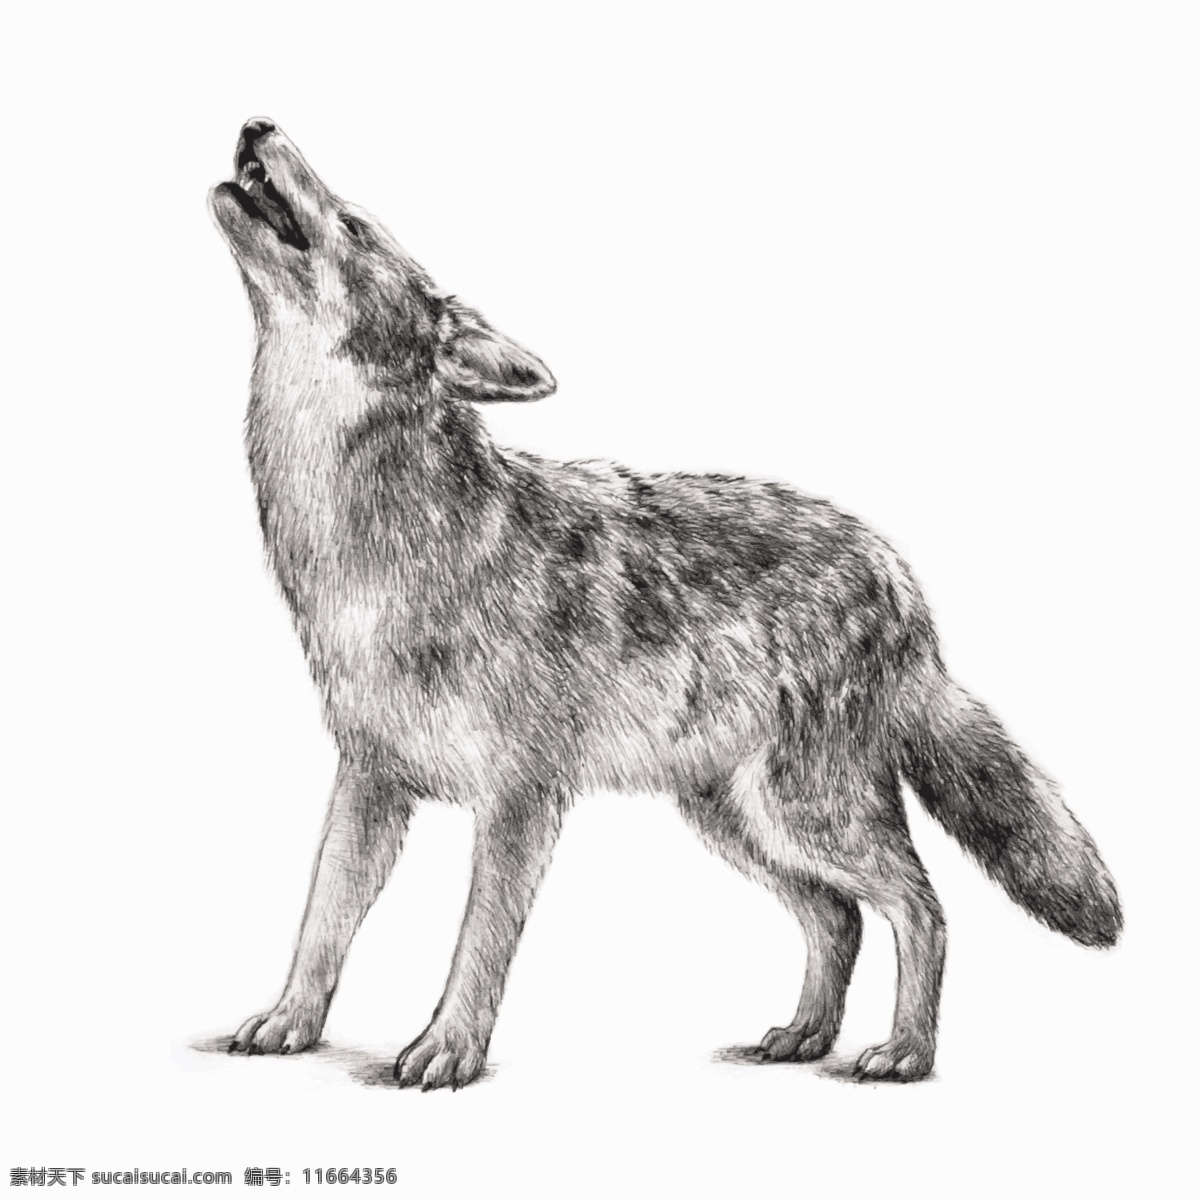 野狼 狼 苍狼 动物 动物世界 手绘 狼狗 野生动物 哺乳动物 生物世界